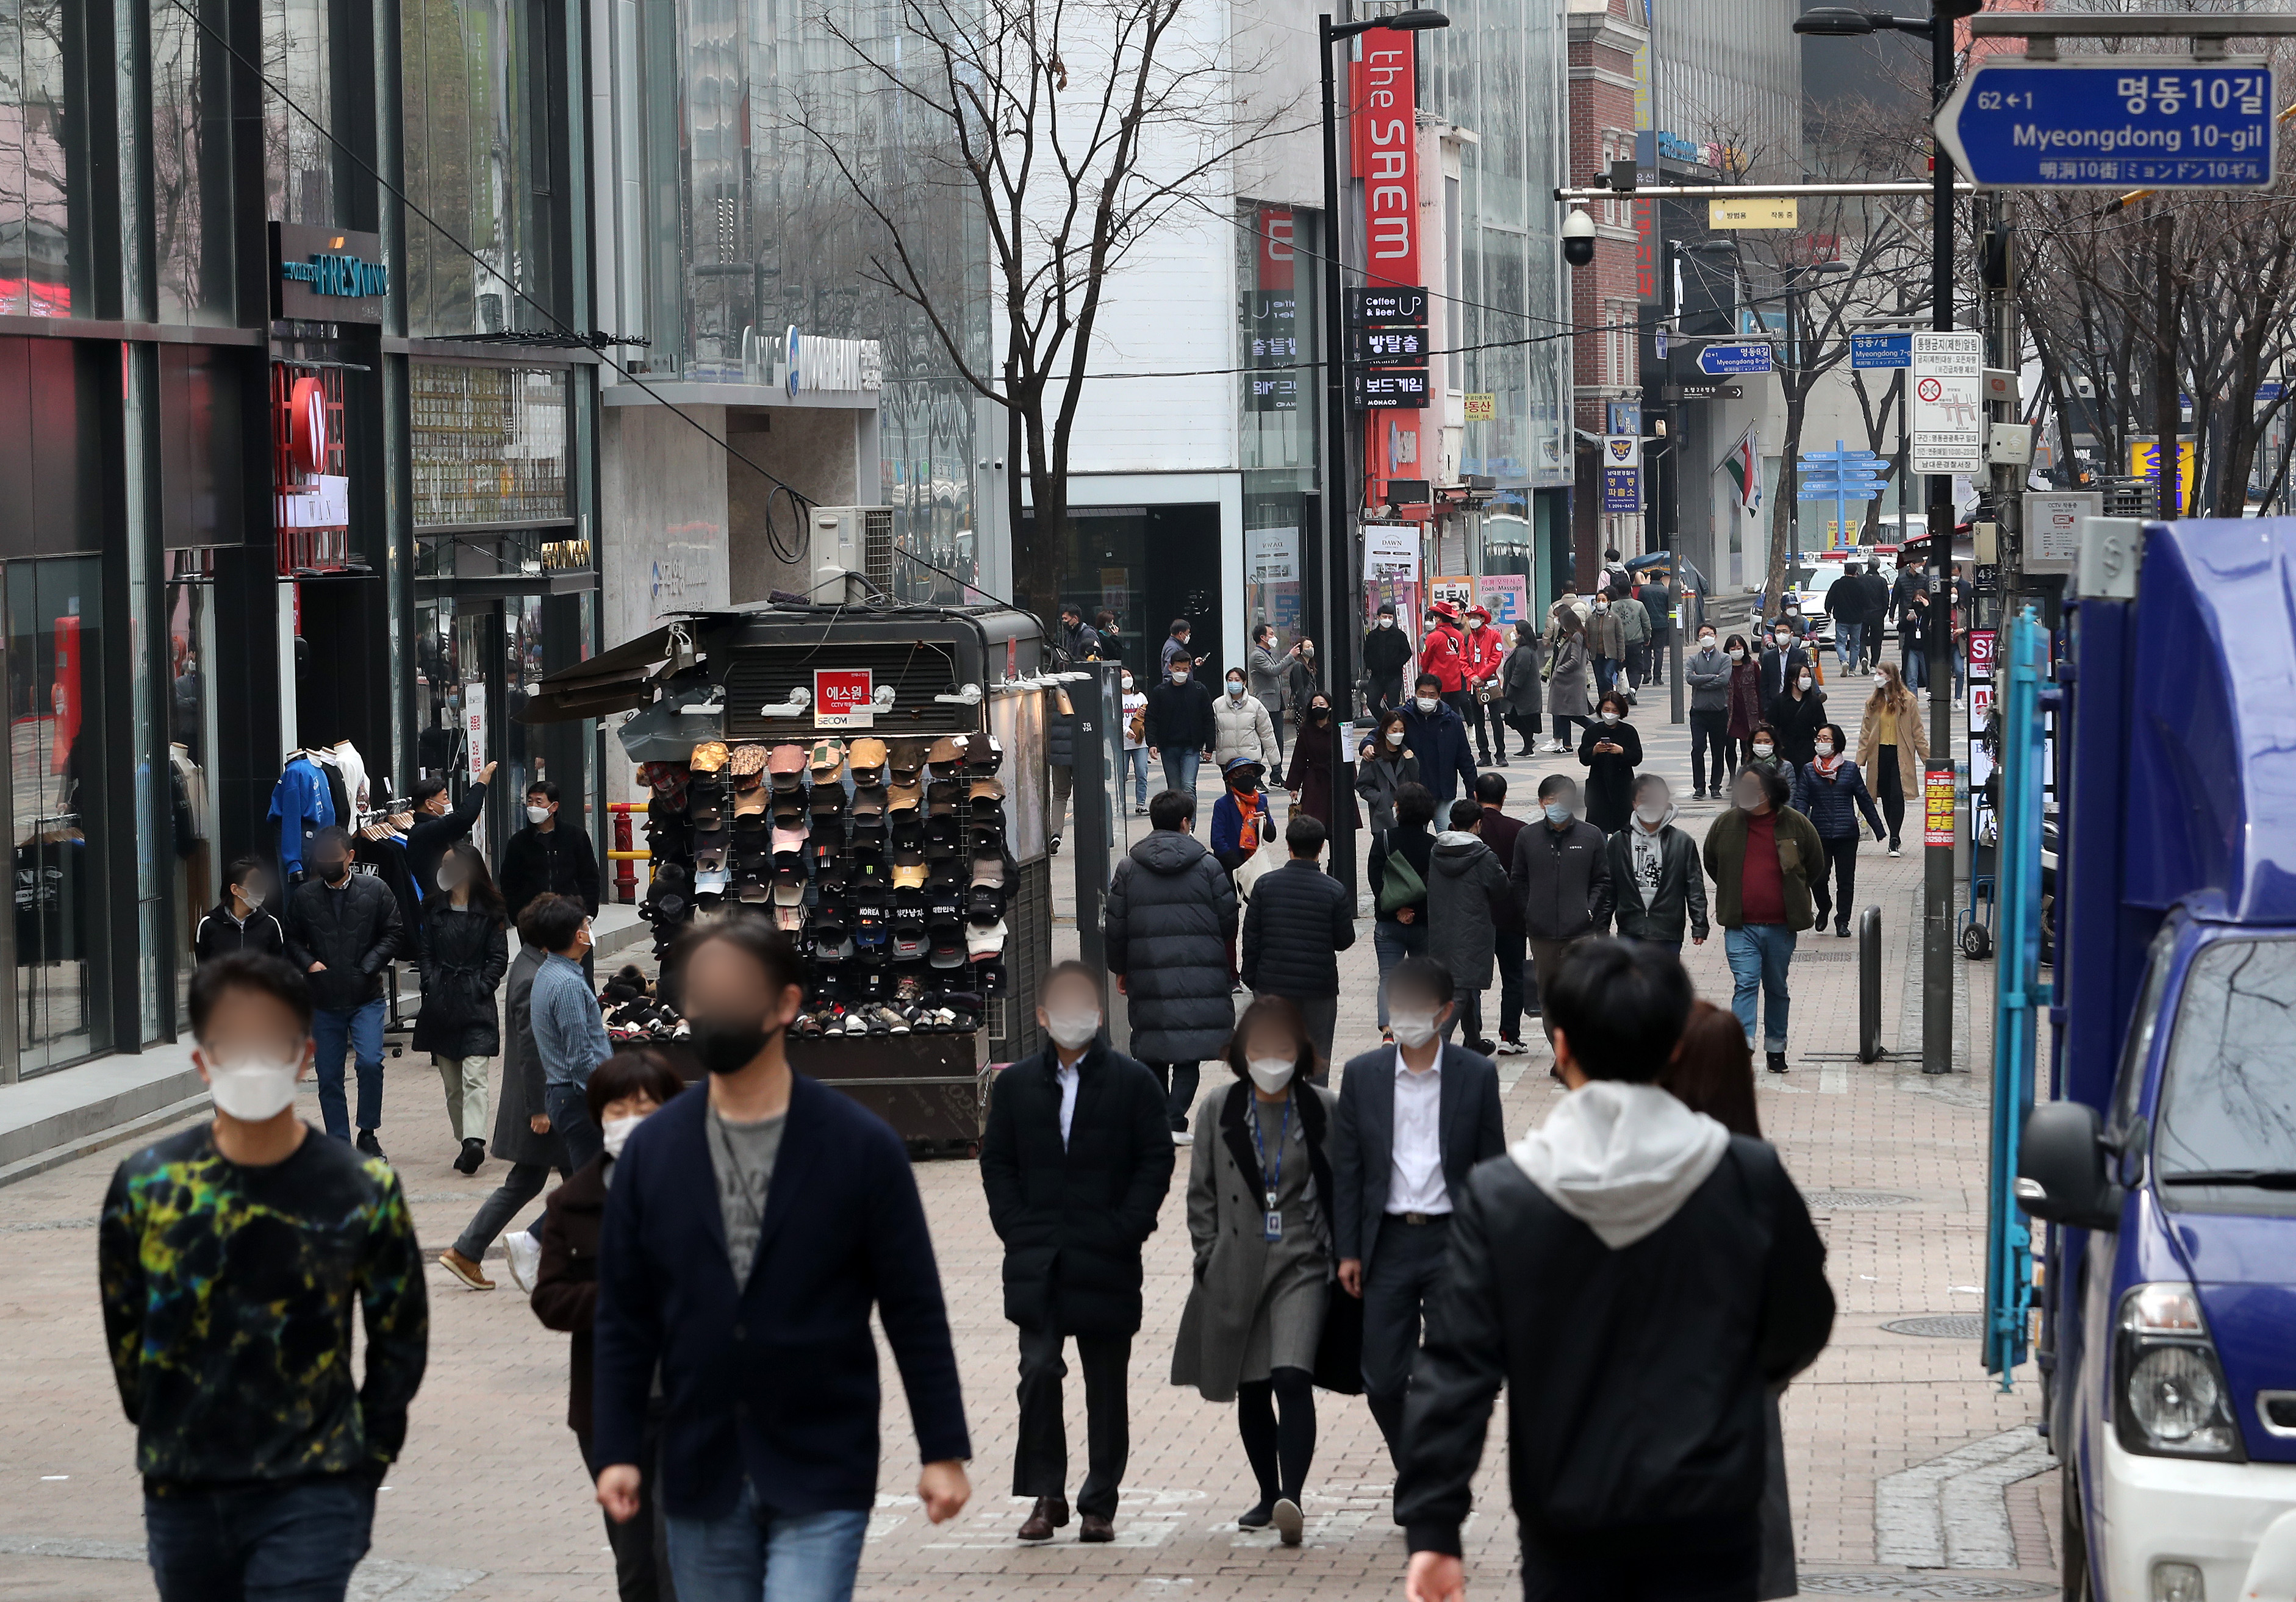 중앙재난안전대책본부(중대본)는 12일 현재 적용중인 거리두기 단계인 수도권 2단계, 비수도권 1.5단계를 오는 15일 0시부터 28일 밤 12시까지 2주간 유지한다고 밝혔다. 아울러 5인이상 사적모임 금지도 유지하기로 했다. 12일 서울 명동 거리에서 직장인 및 시민들이 점심 식사를 위해 이동하고 있다. 2021.3.12 뉴스1